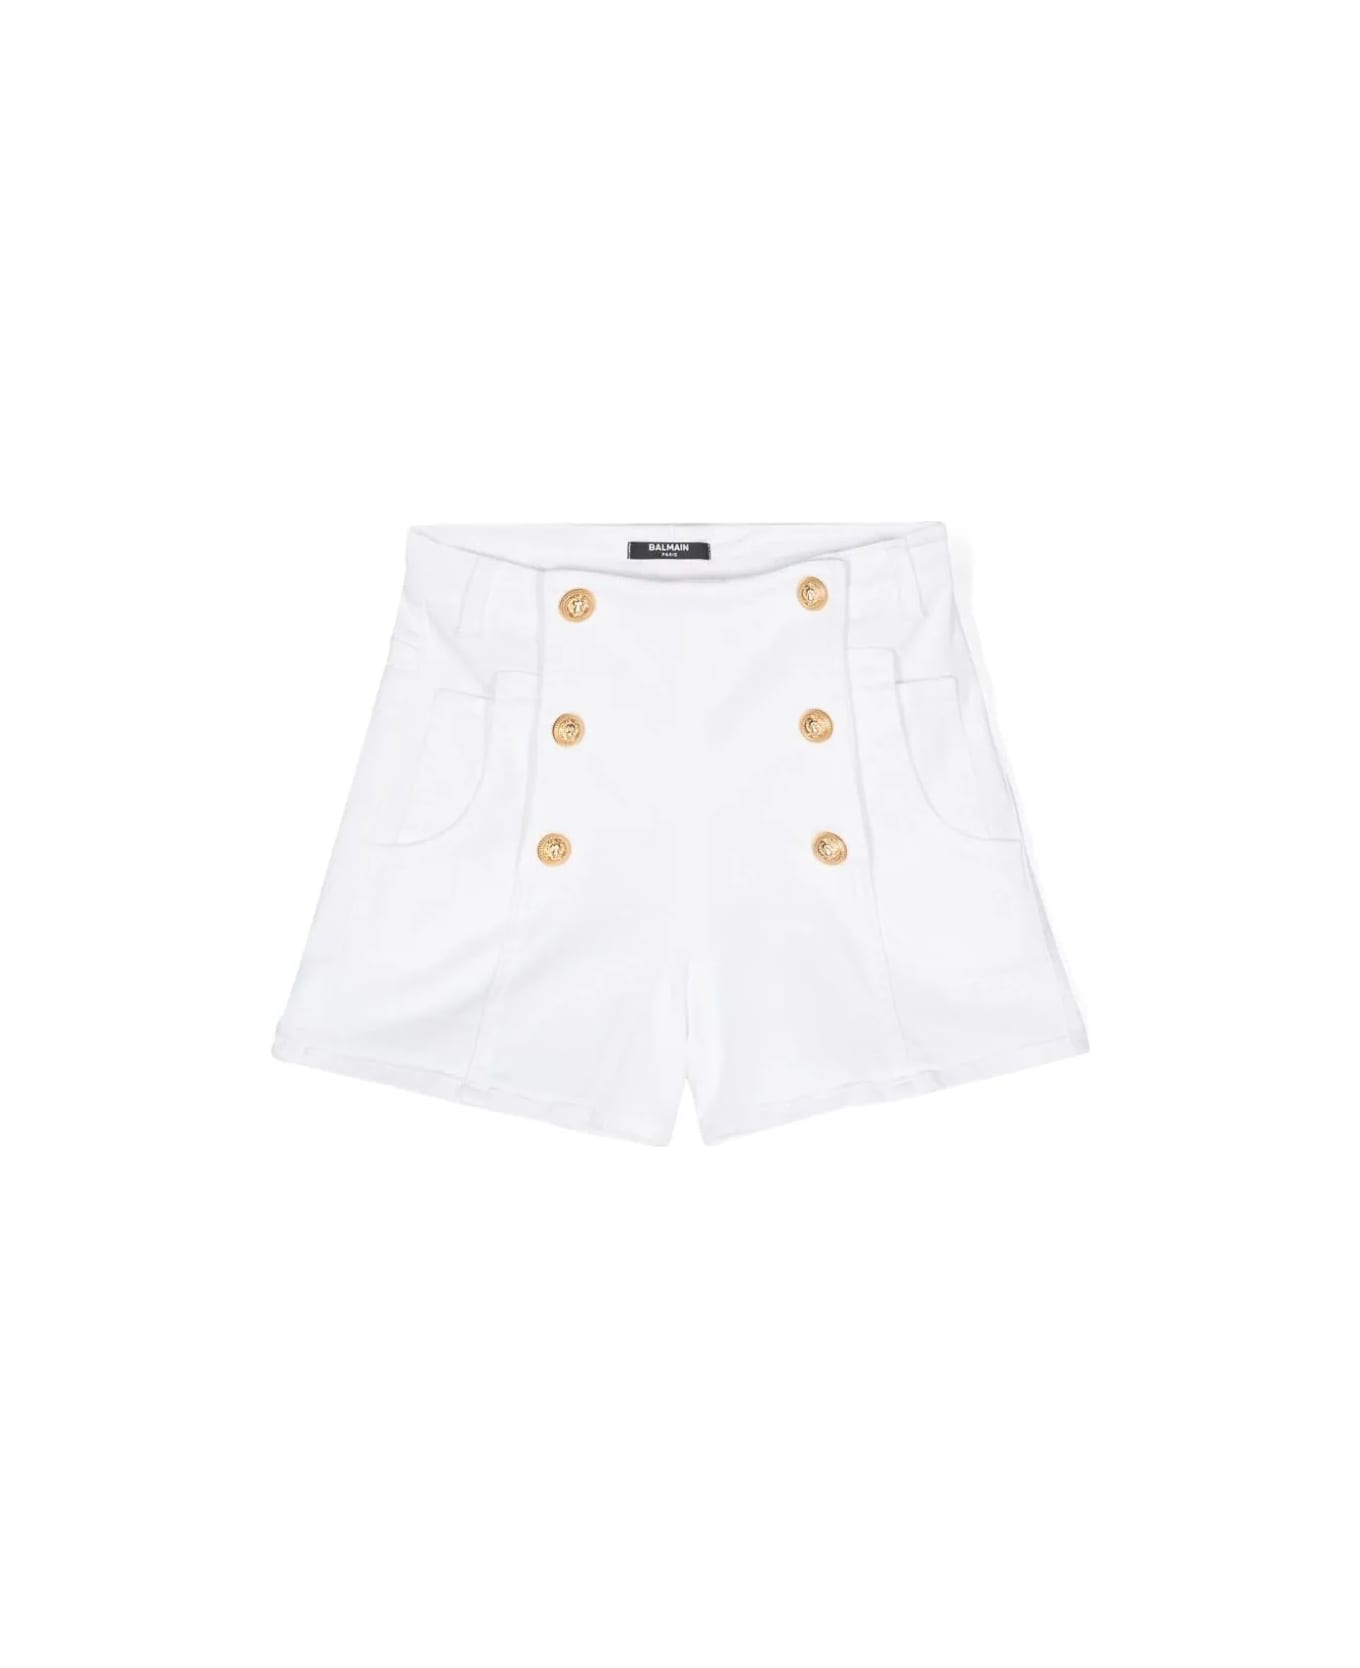 Balmain Shorts Denim - White ボトムス